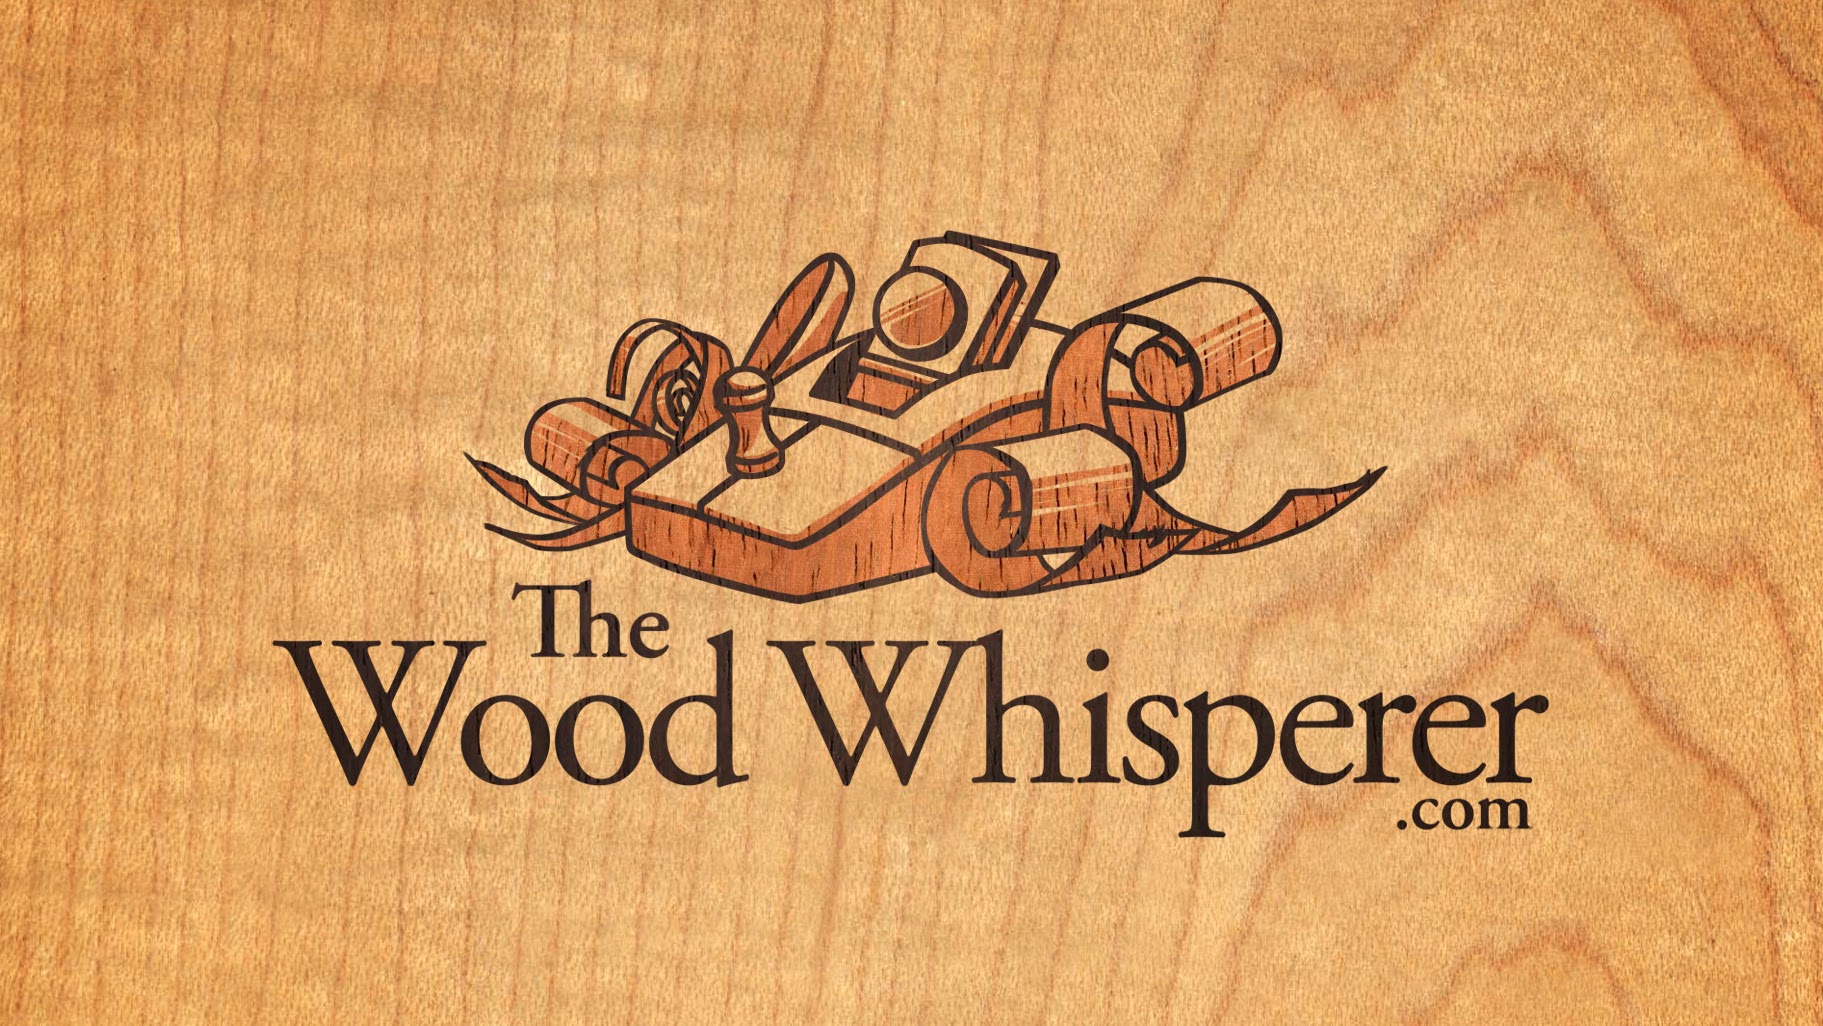 The Wood Whisperer